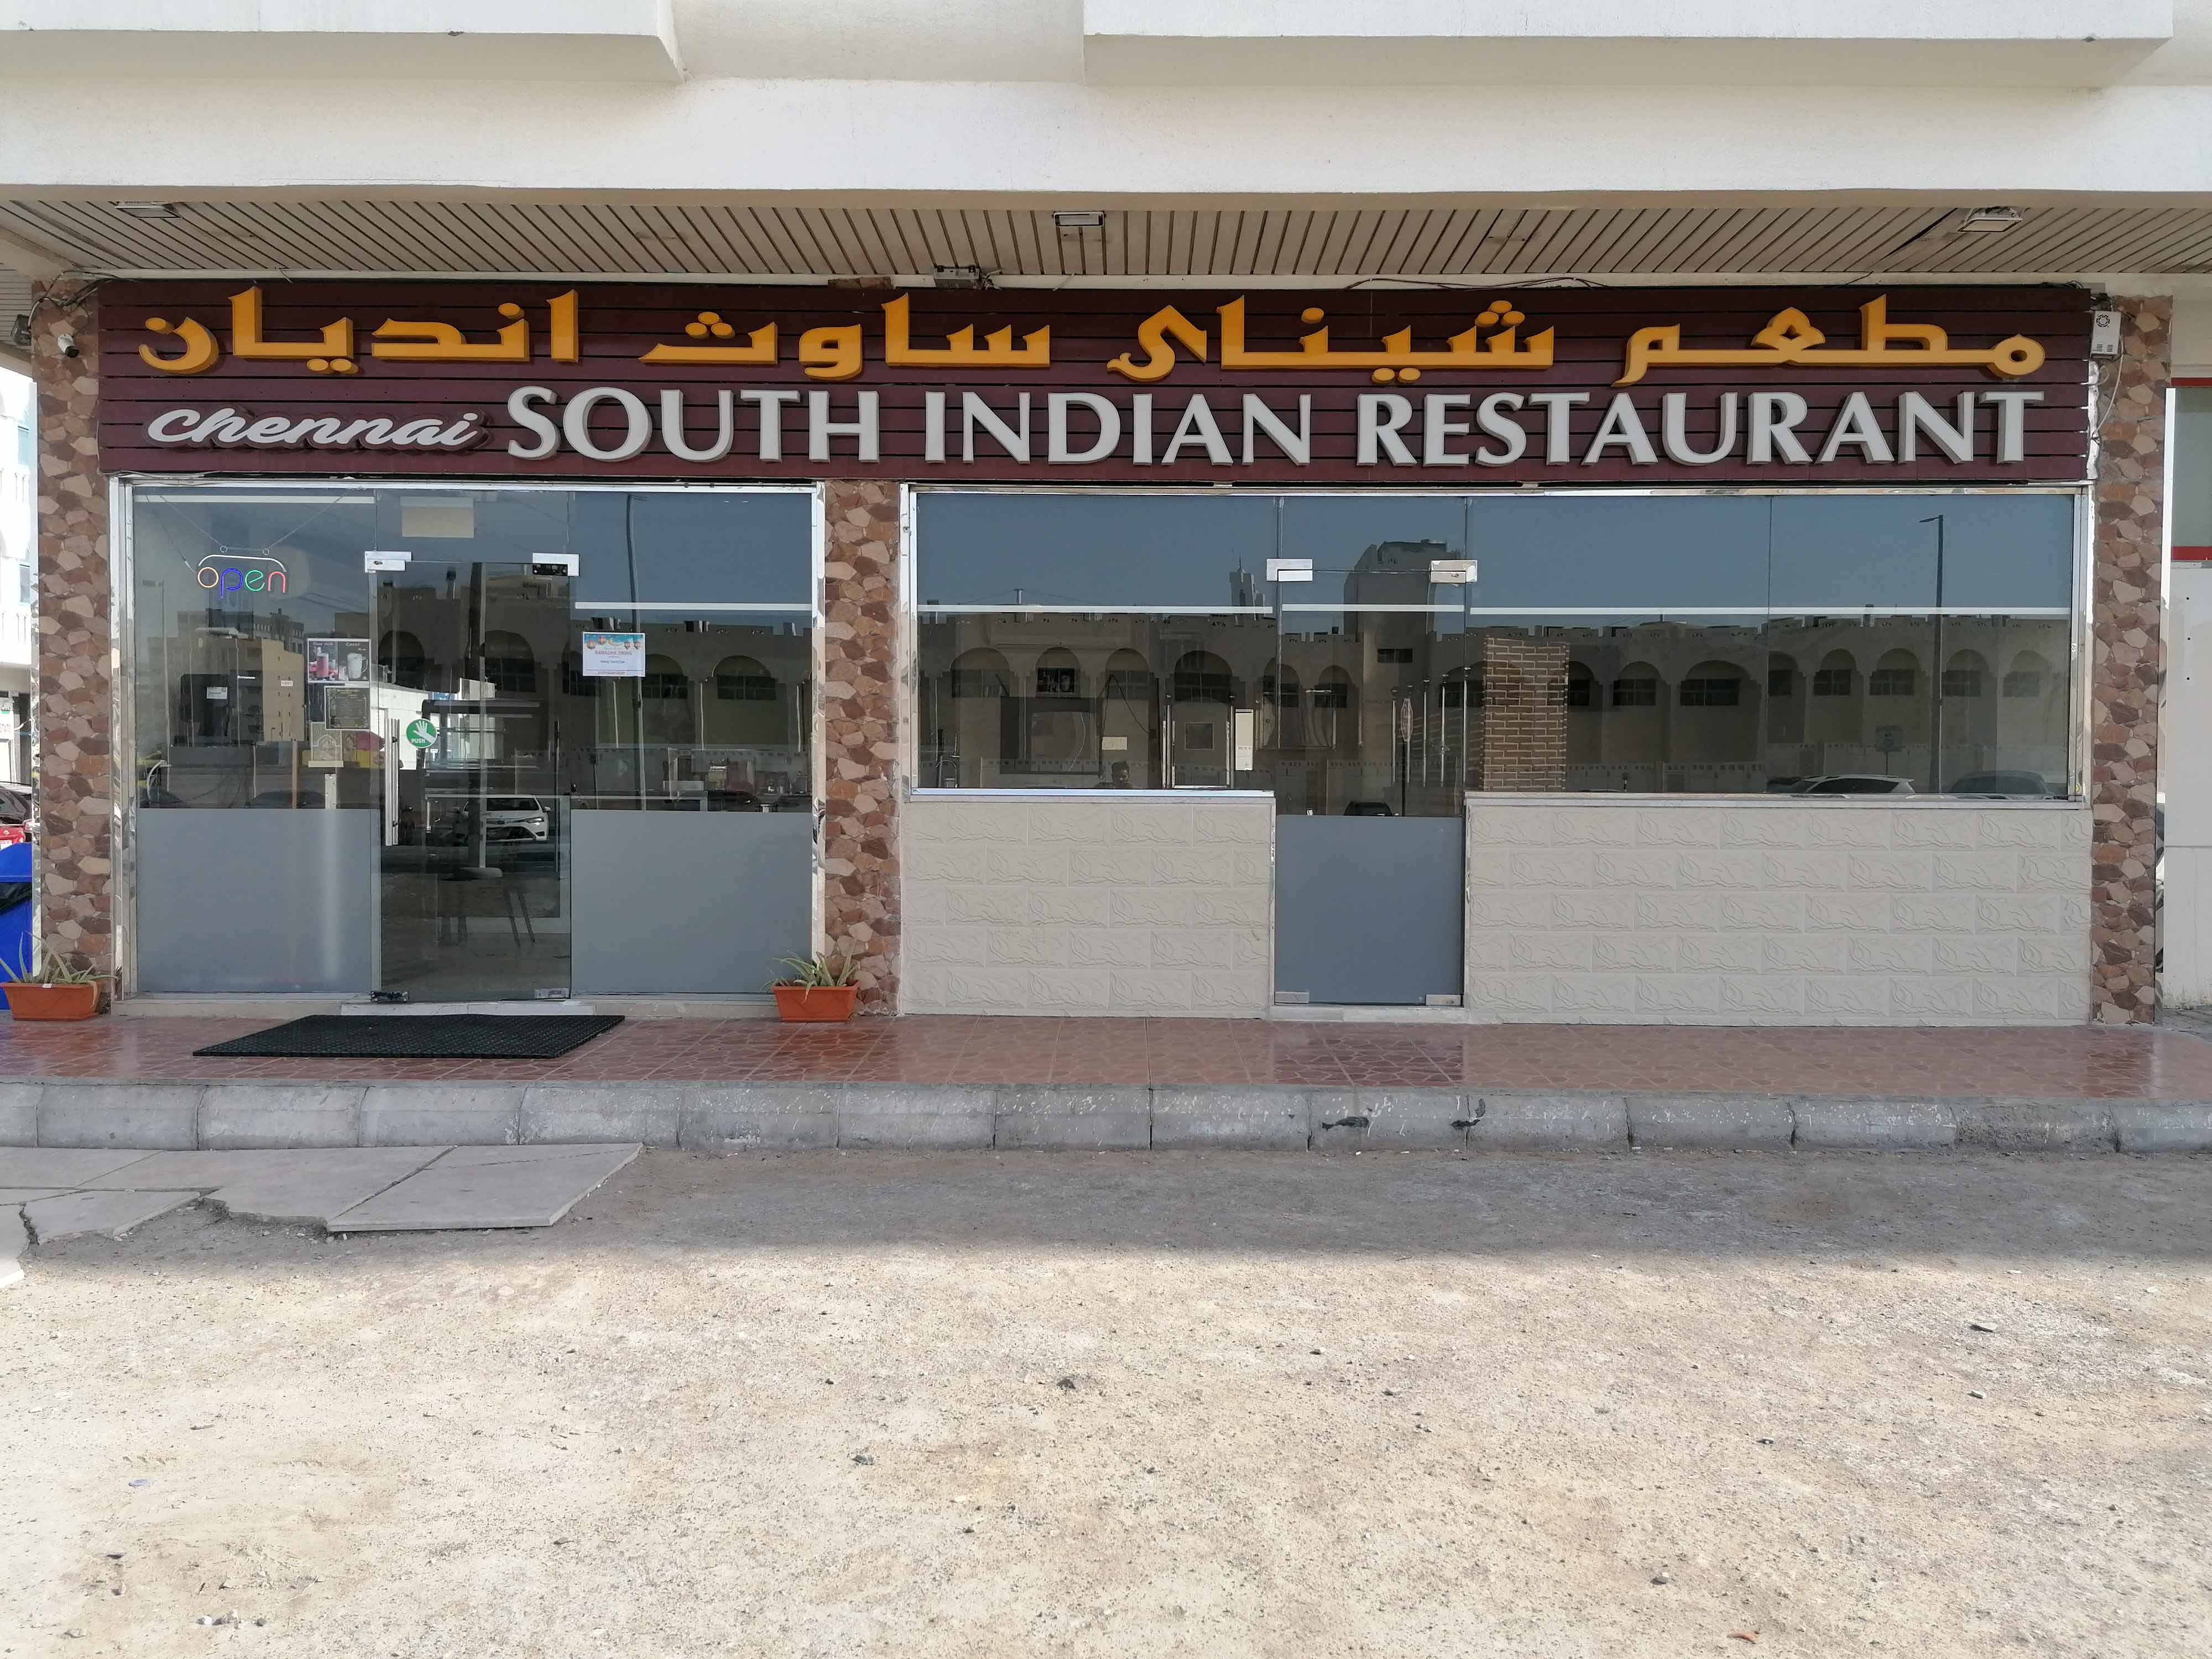 Chennai South Indian Restaurant Mussafah Shabiya Abu Dhabi Zomato